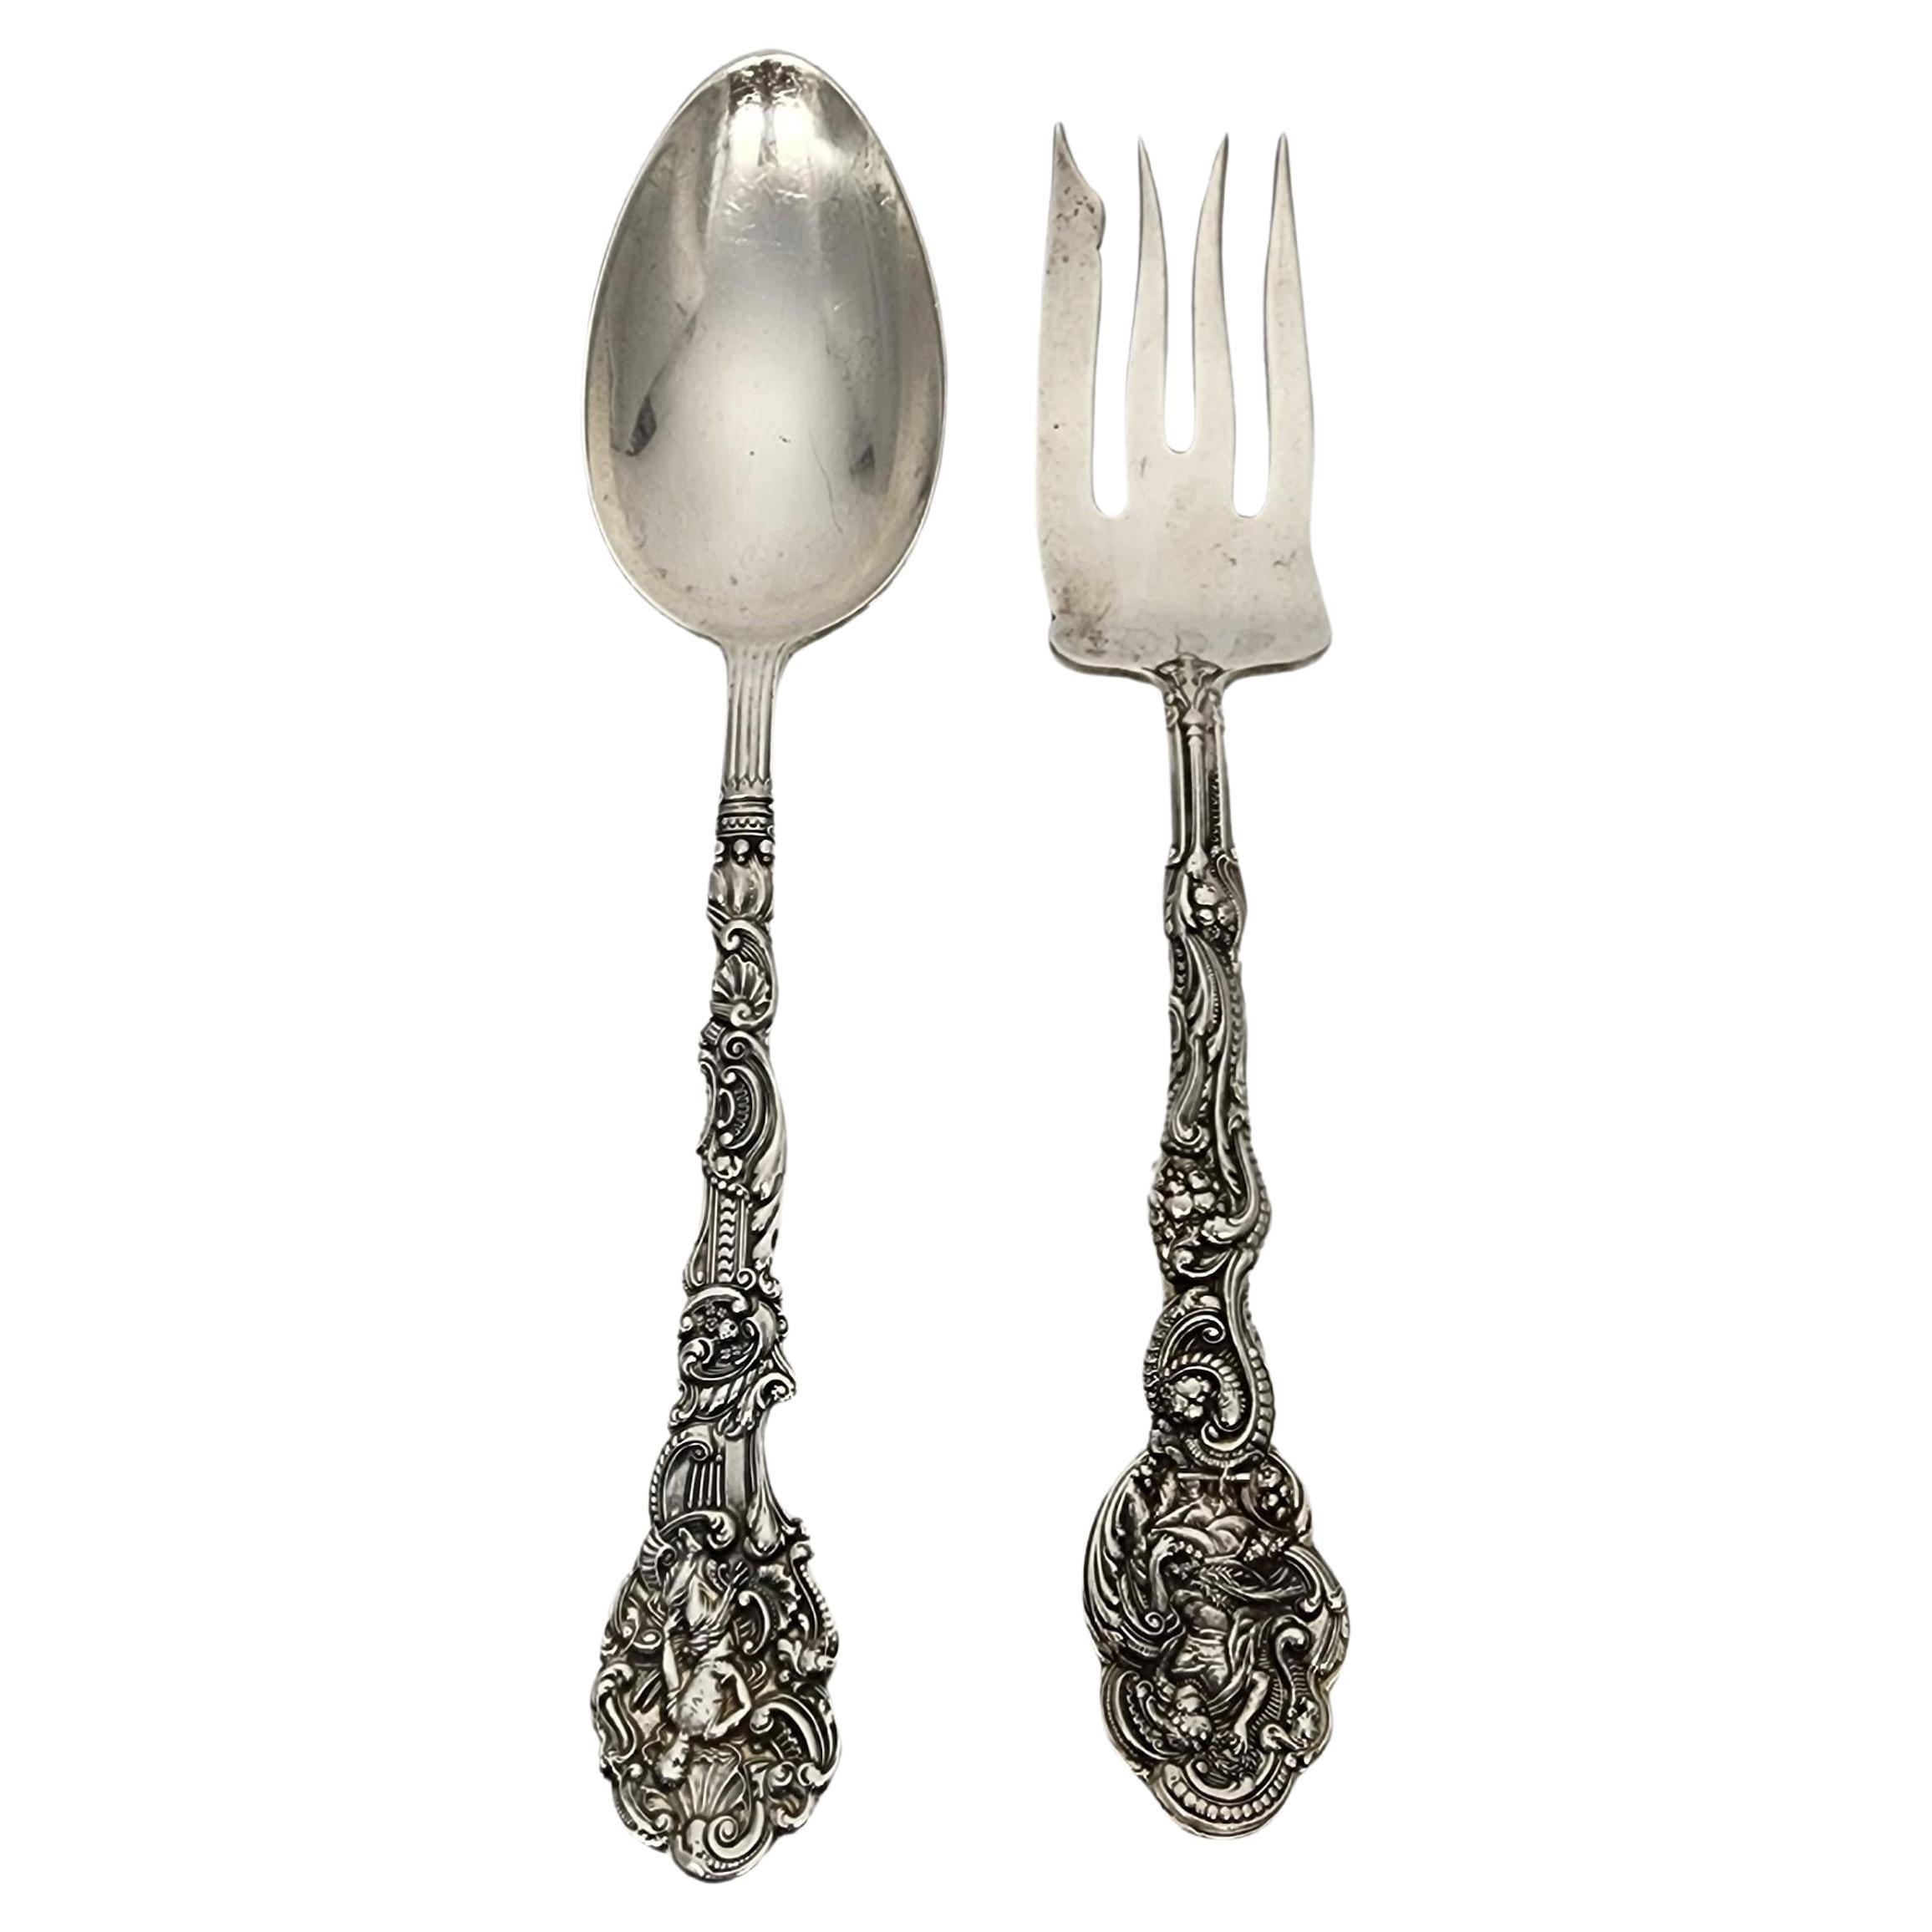 Gorham Versailles Sterling Silver Serving Fork & Spoon Set 8 1/4" #15709